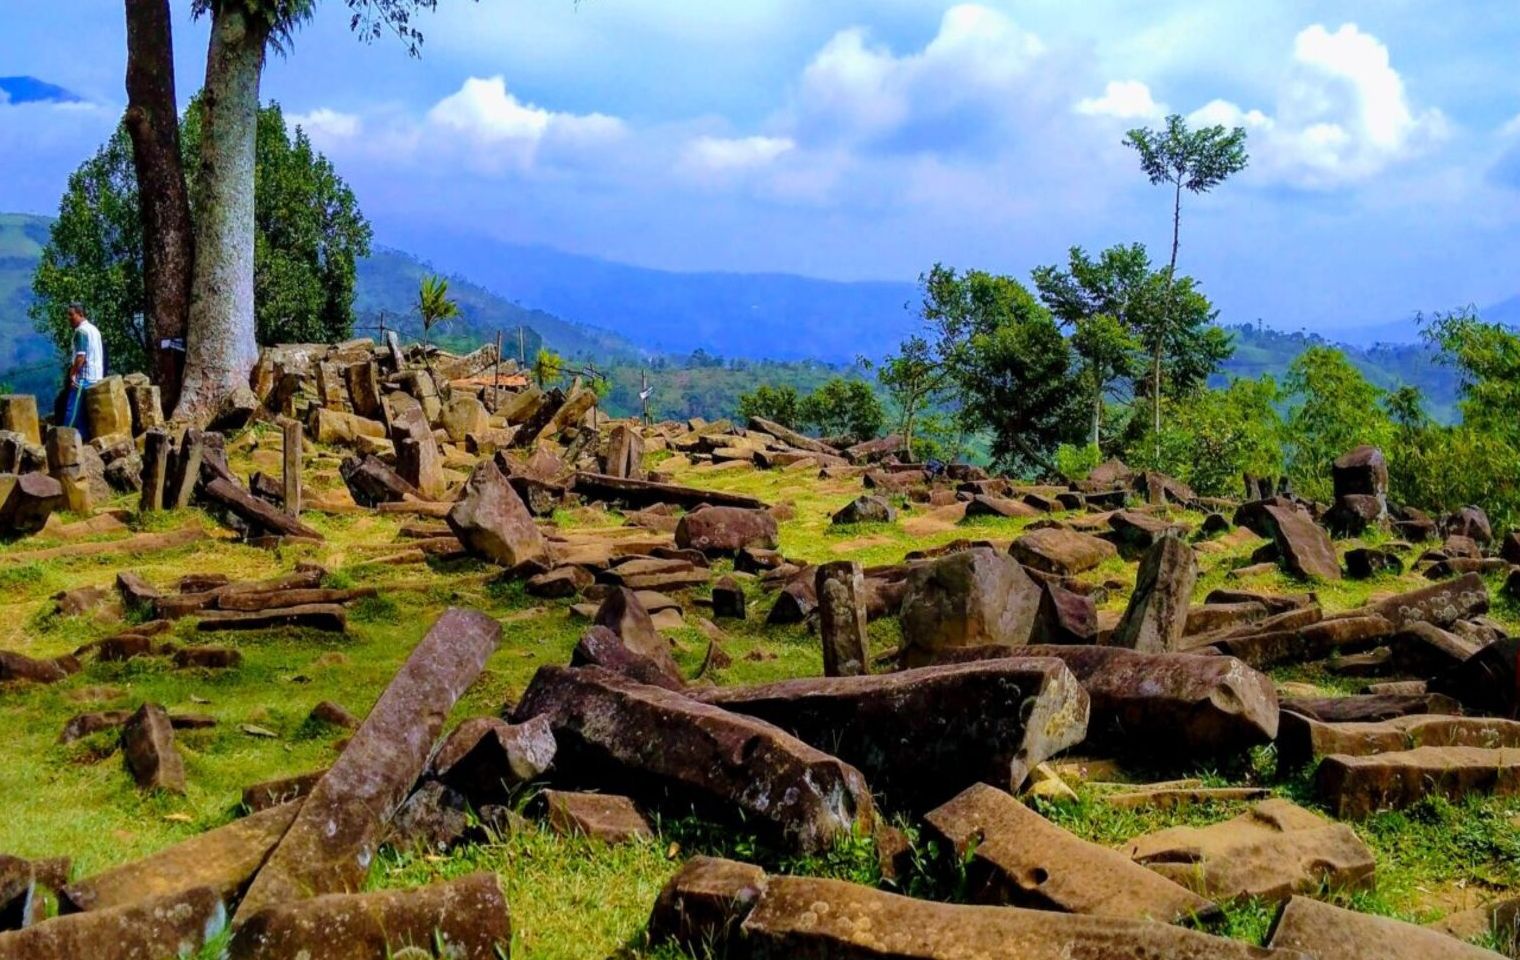 Situs gunung padang merupakan situs prasejarah peninggalan kebudayaan megalitikum yang terletak di desa Karyamukti, Cianjur, Jawa Barat.